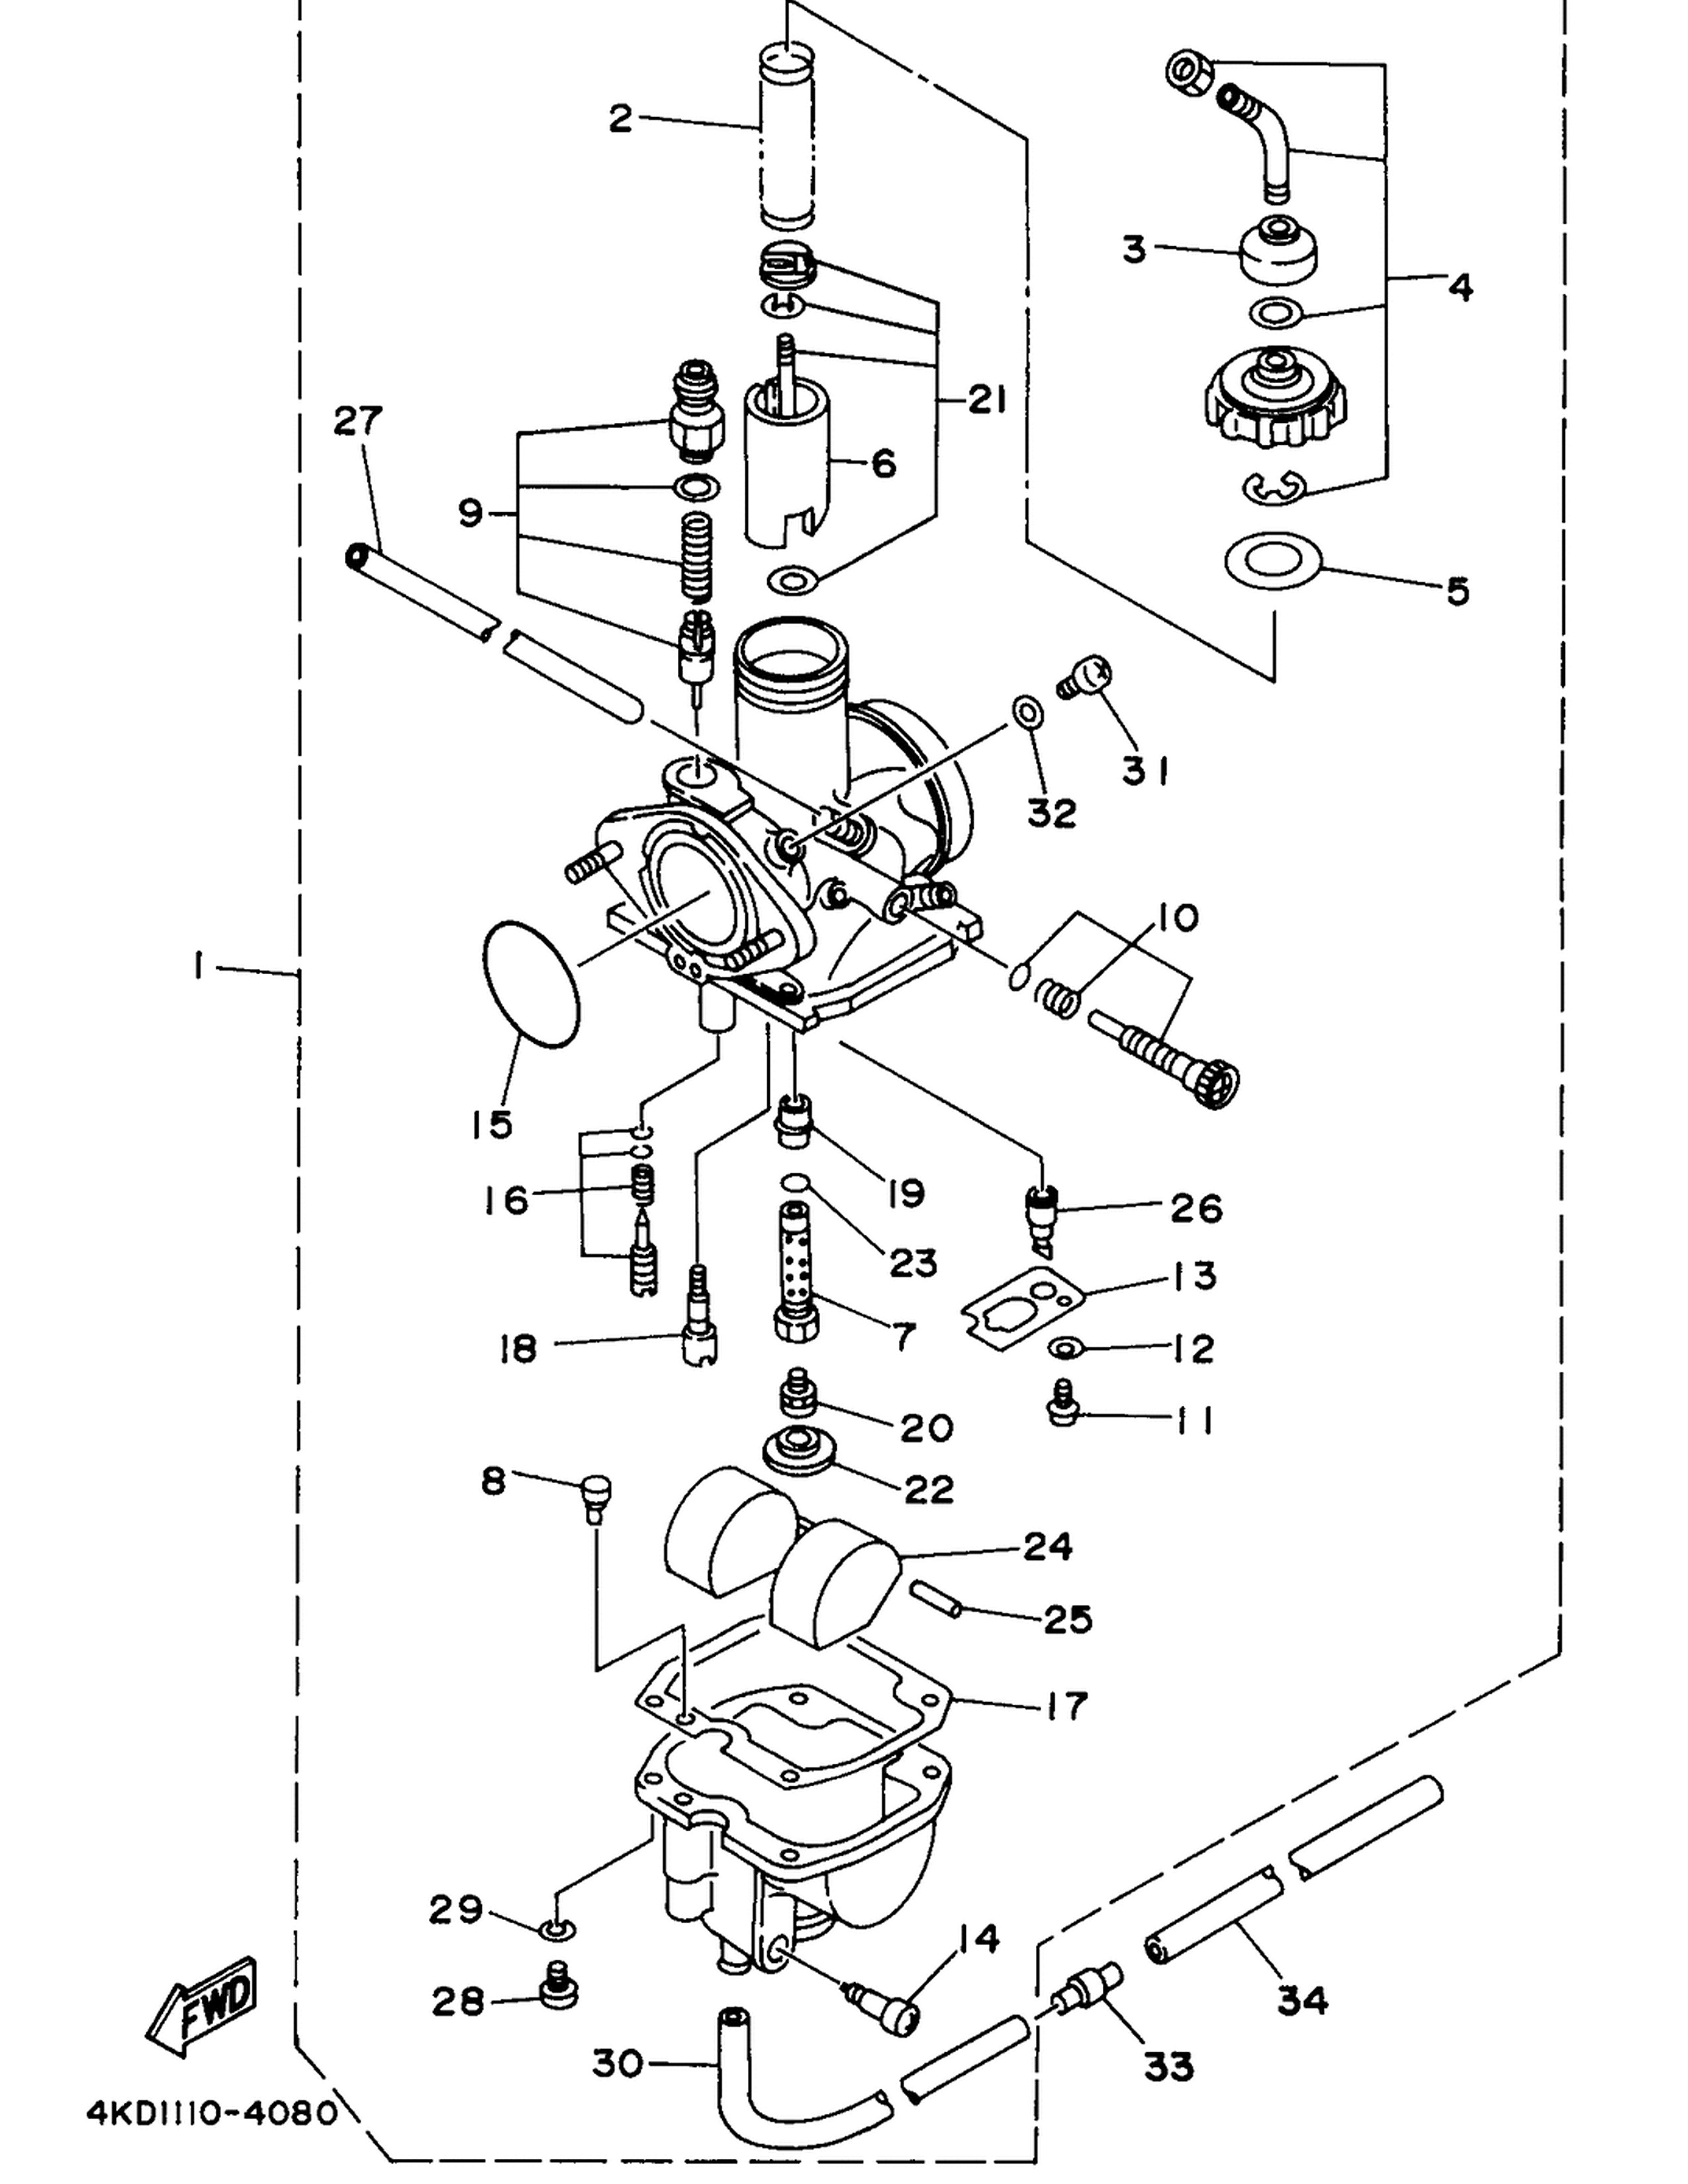 Brake Parts Diagram Timberwolf Wiring Diagram Wiring Diagram Of Brake Parts Diagram